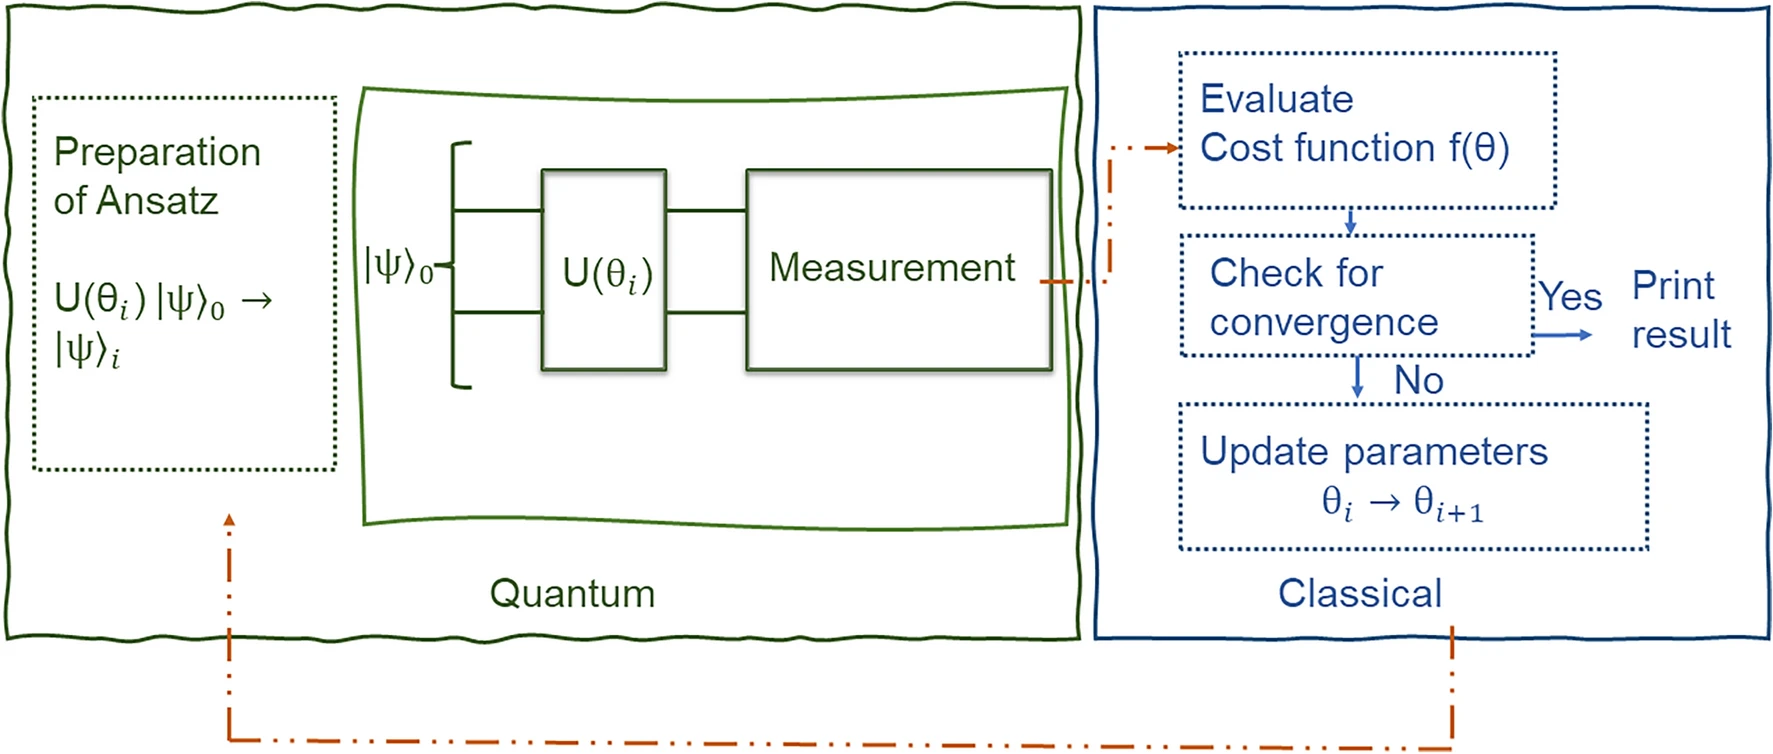 Quantum Computing In Nisq Era: Optimizing Resource Use For Hybrid Algorithms